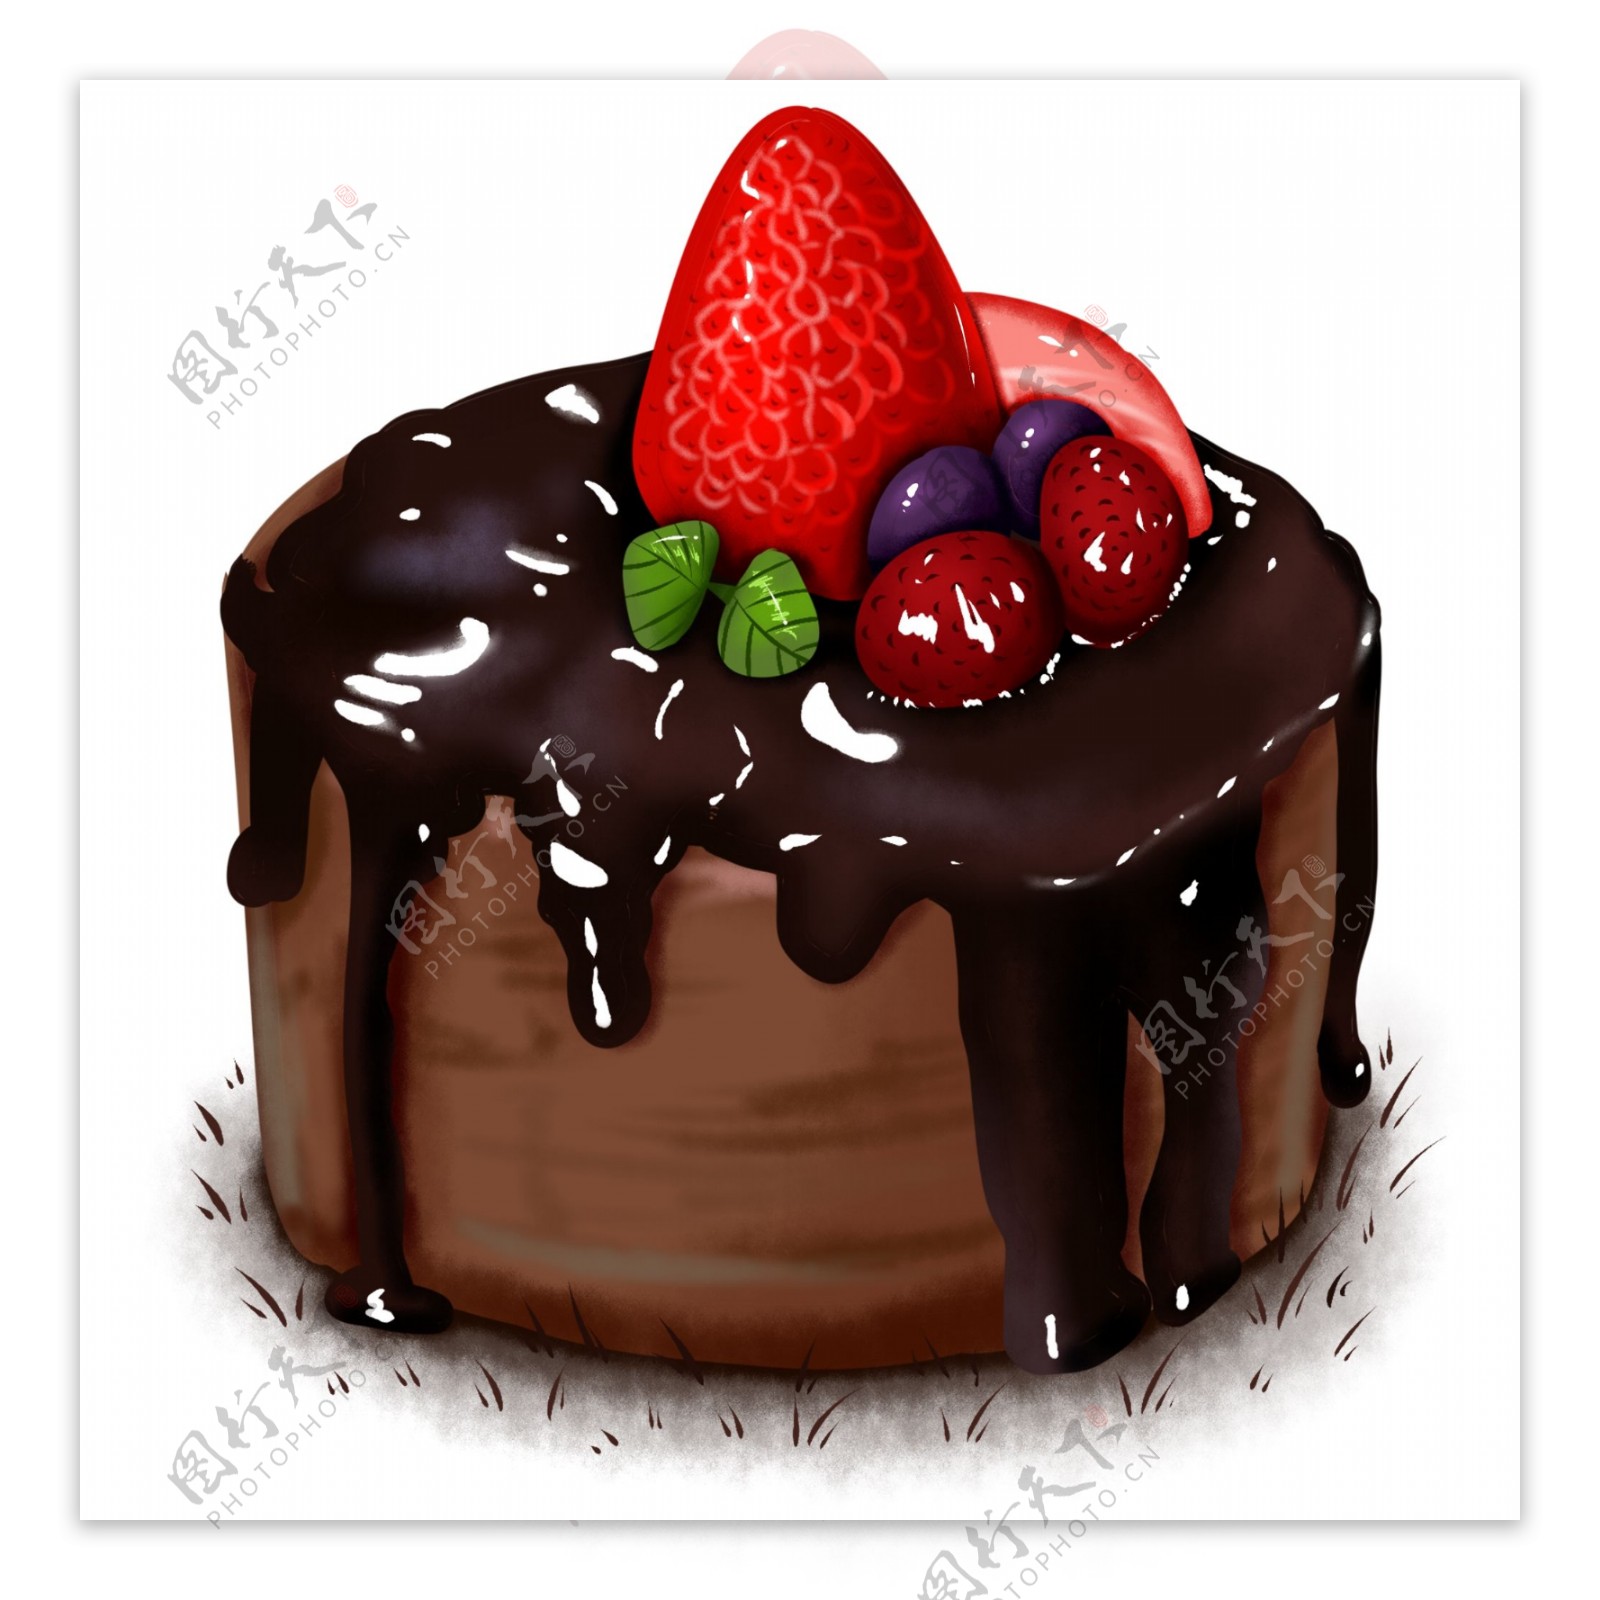 原创手绘食物蓝莓巧克力草莓杯子蛋糕